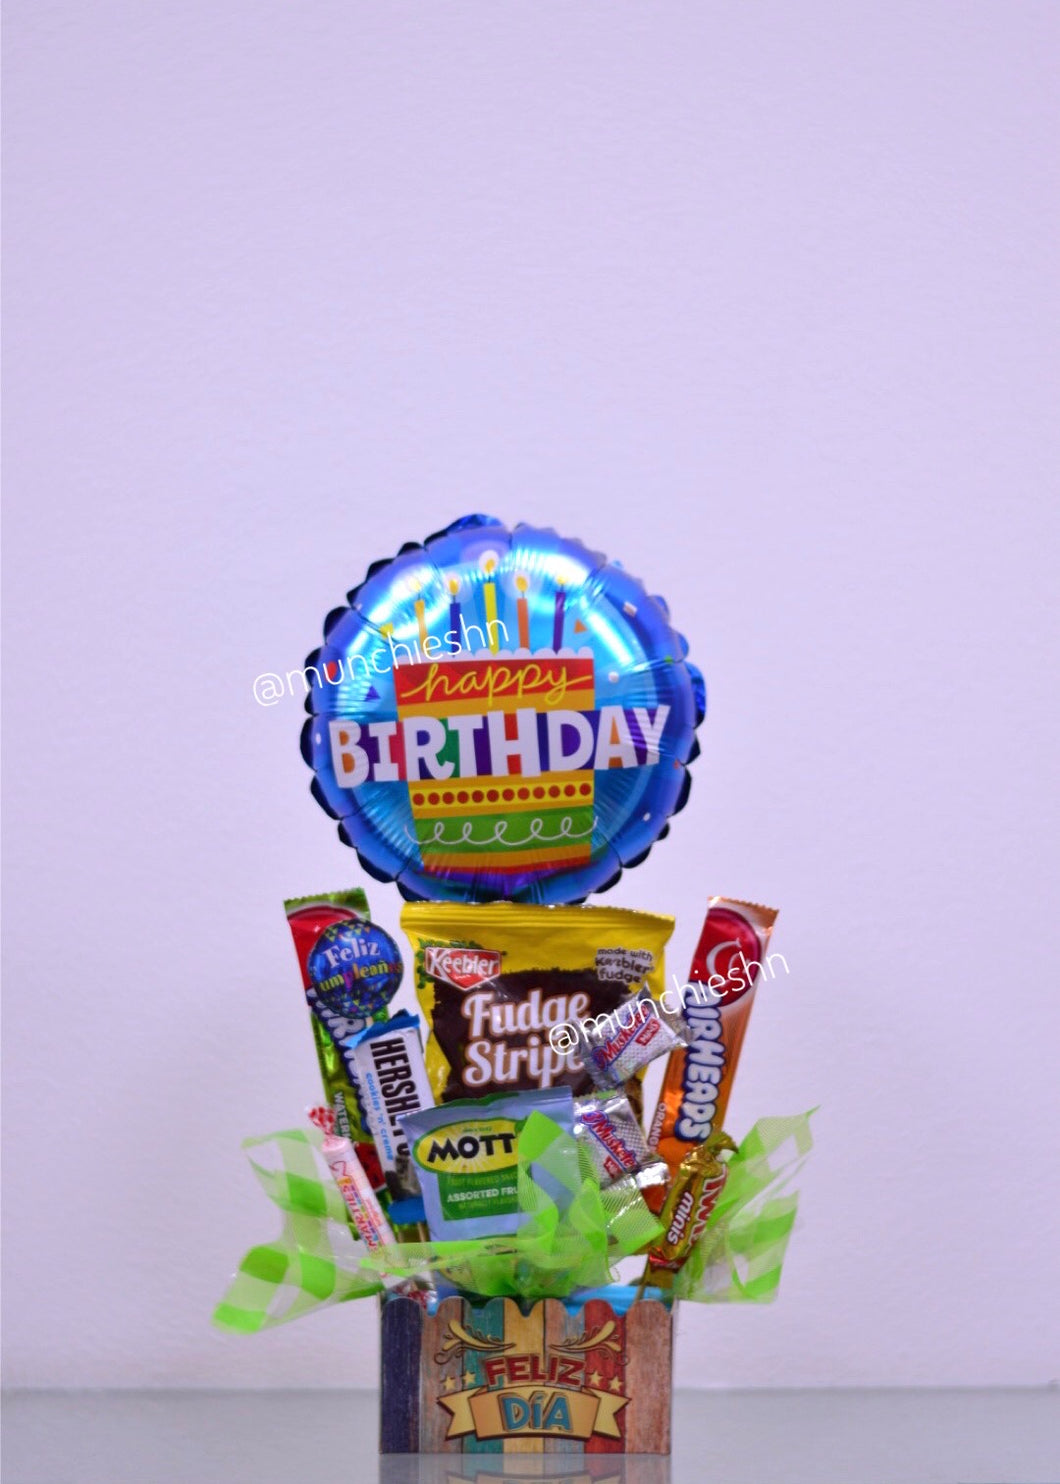 Arreglo de regalo Cajita feliz dia con dulces y chocolate americano con globo mediano, perfecto para desear un feliz cumpleanos. Puede ser regalo para mujer u hombre, amigos, ninos.